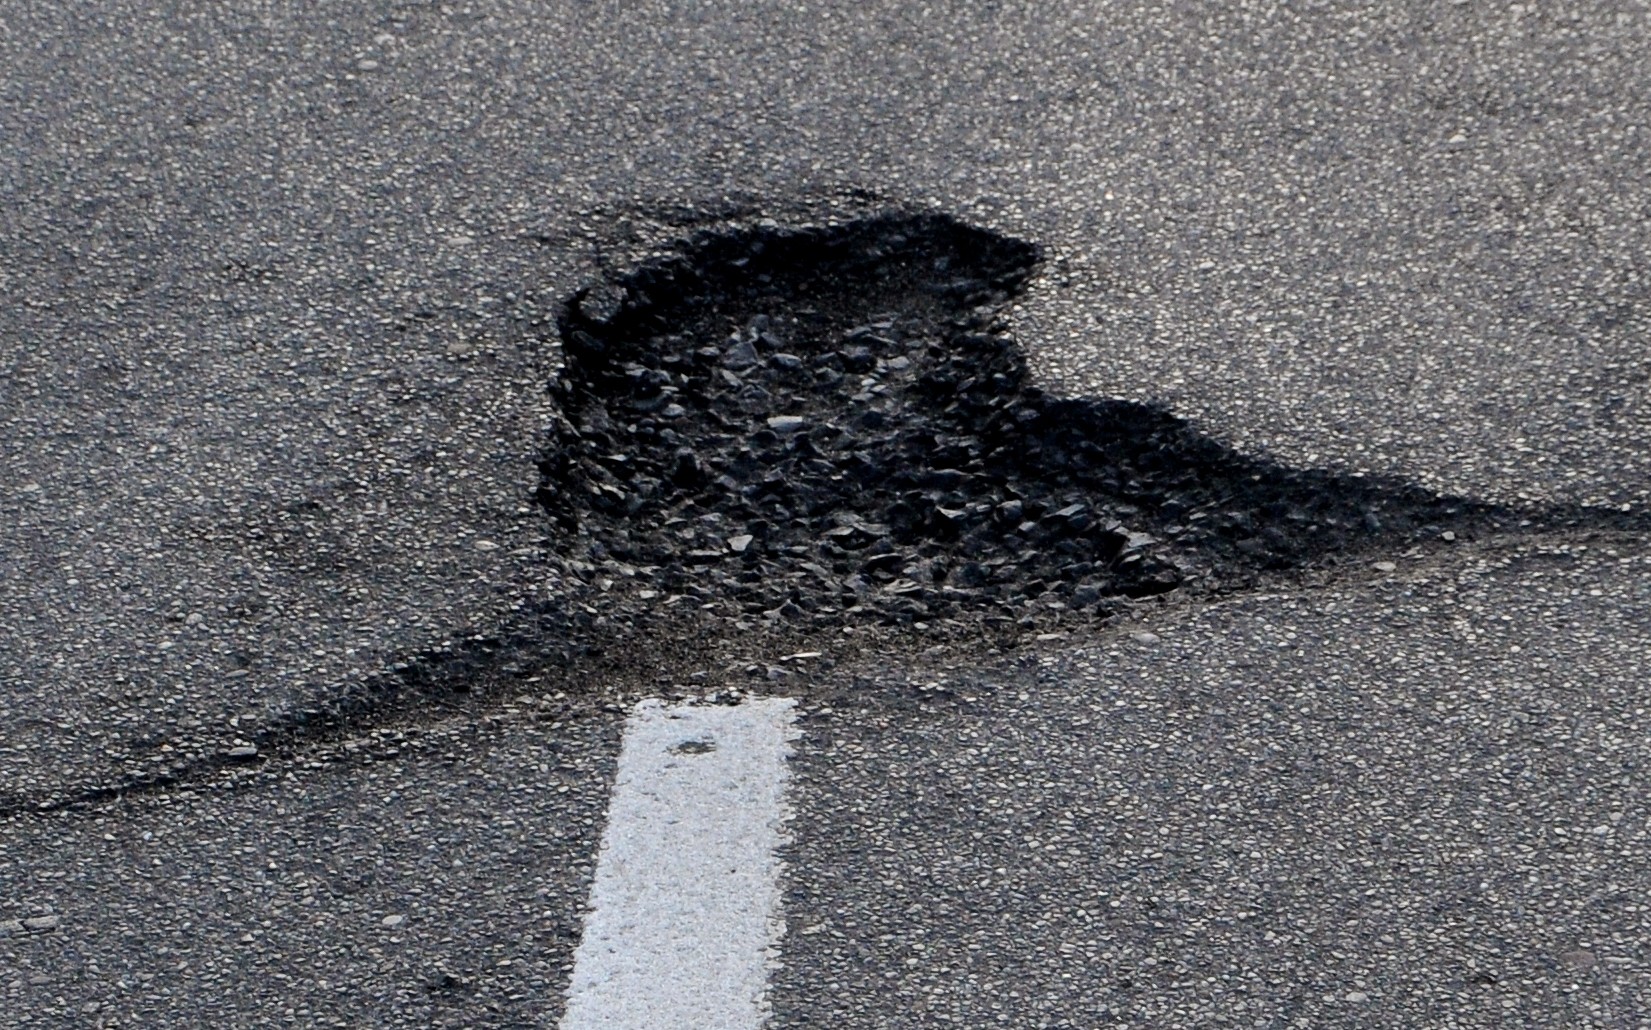 Pothole (2)